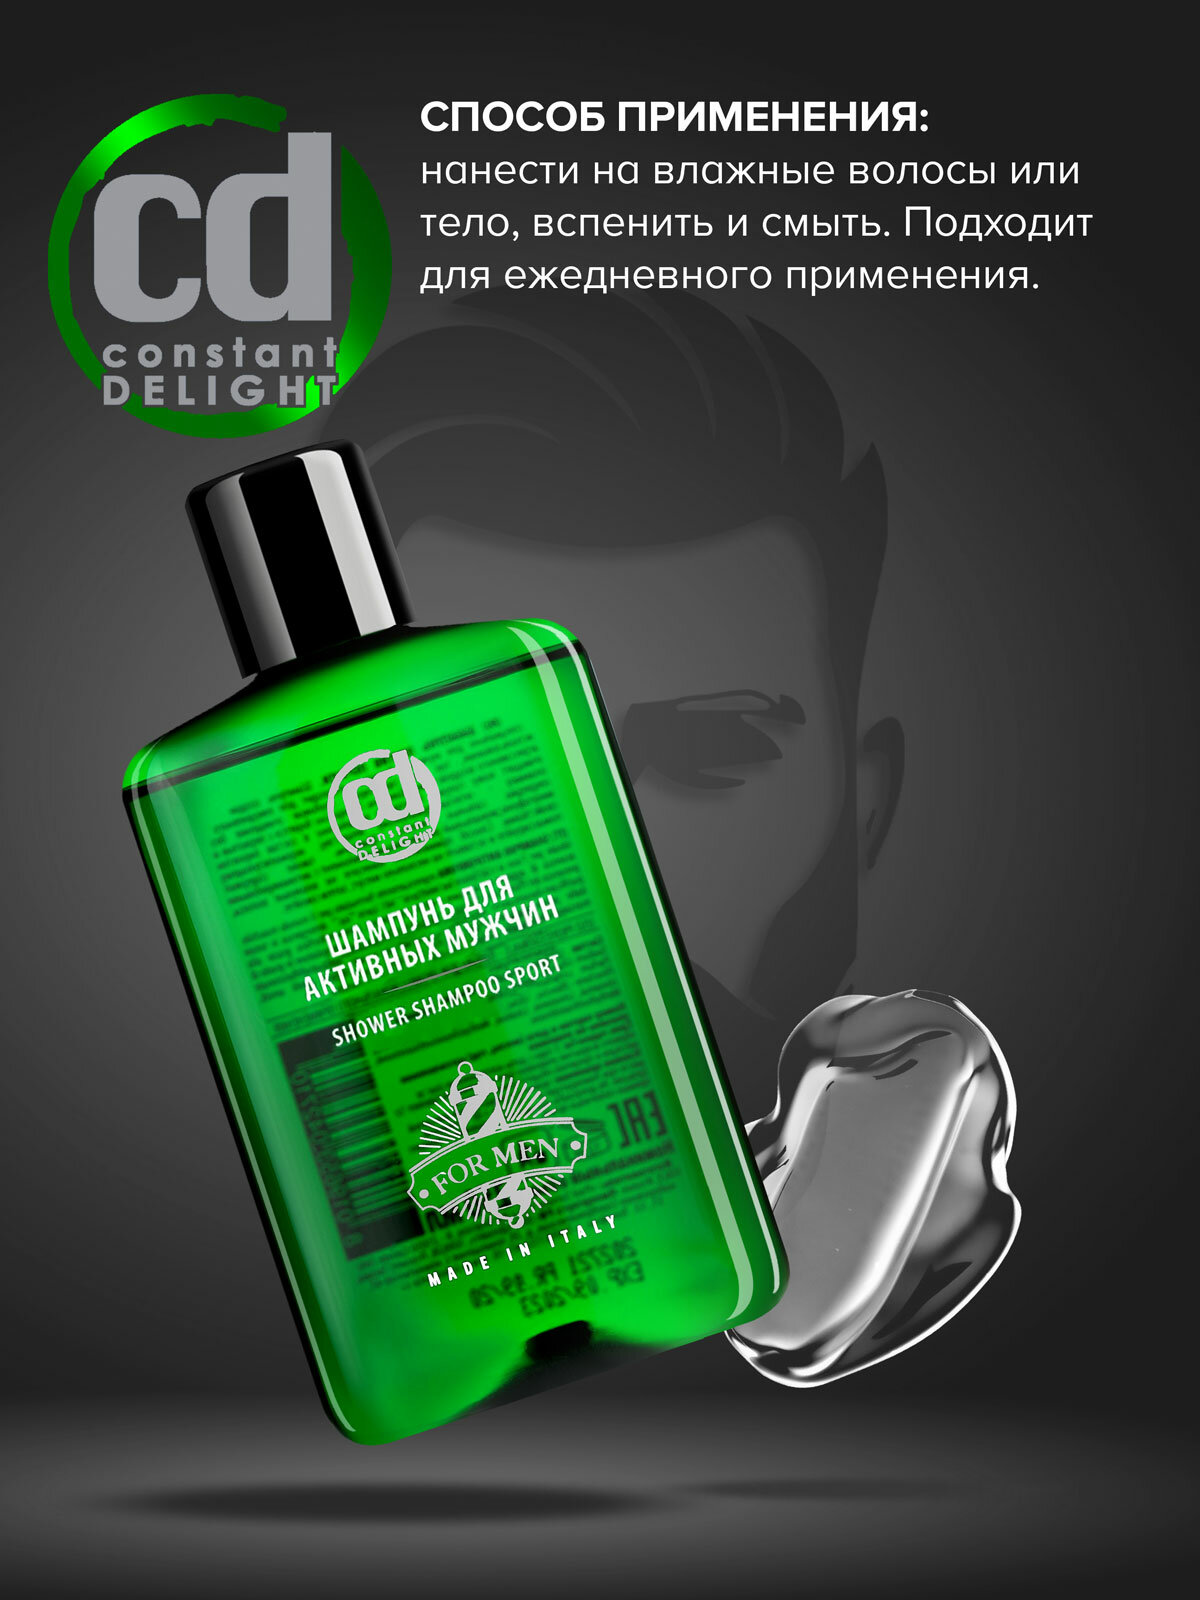 Constant Delight Шампунь для активных мужчин Экстремальная свежесть Shower Shampoo Sport For Men, 250 мл (Constant Delight, ) - фото №5